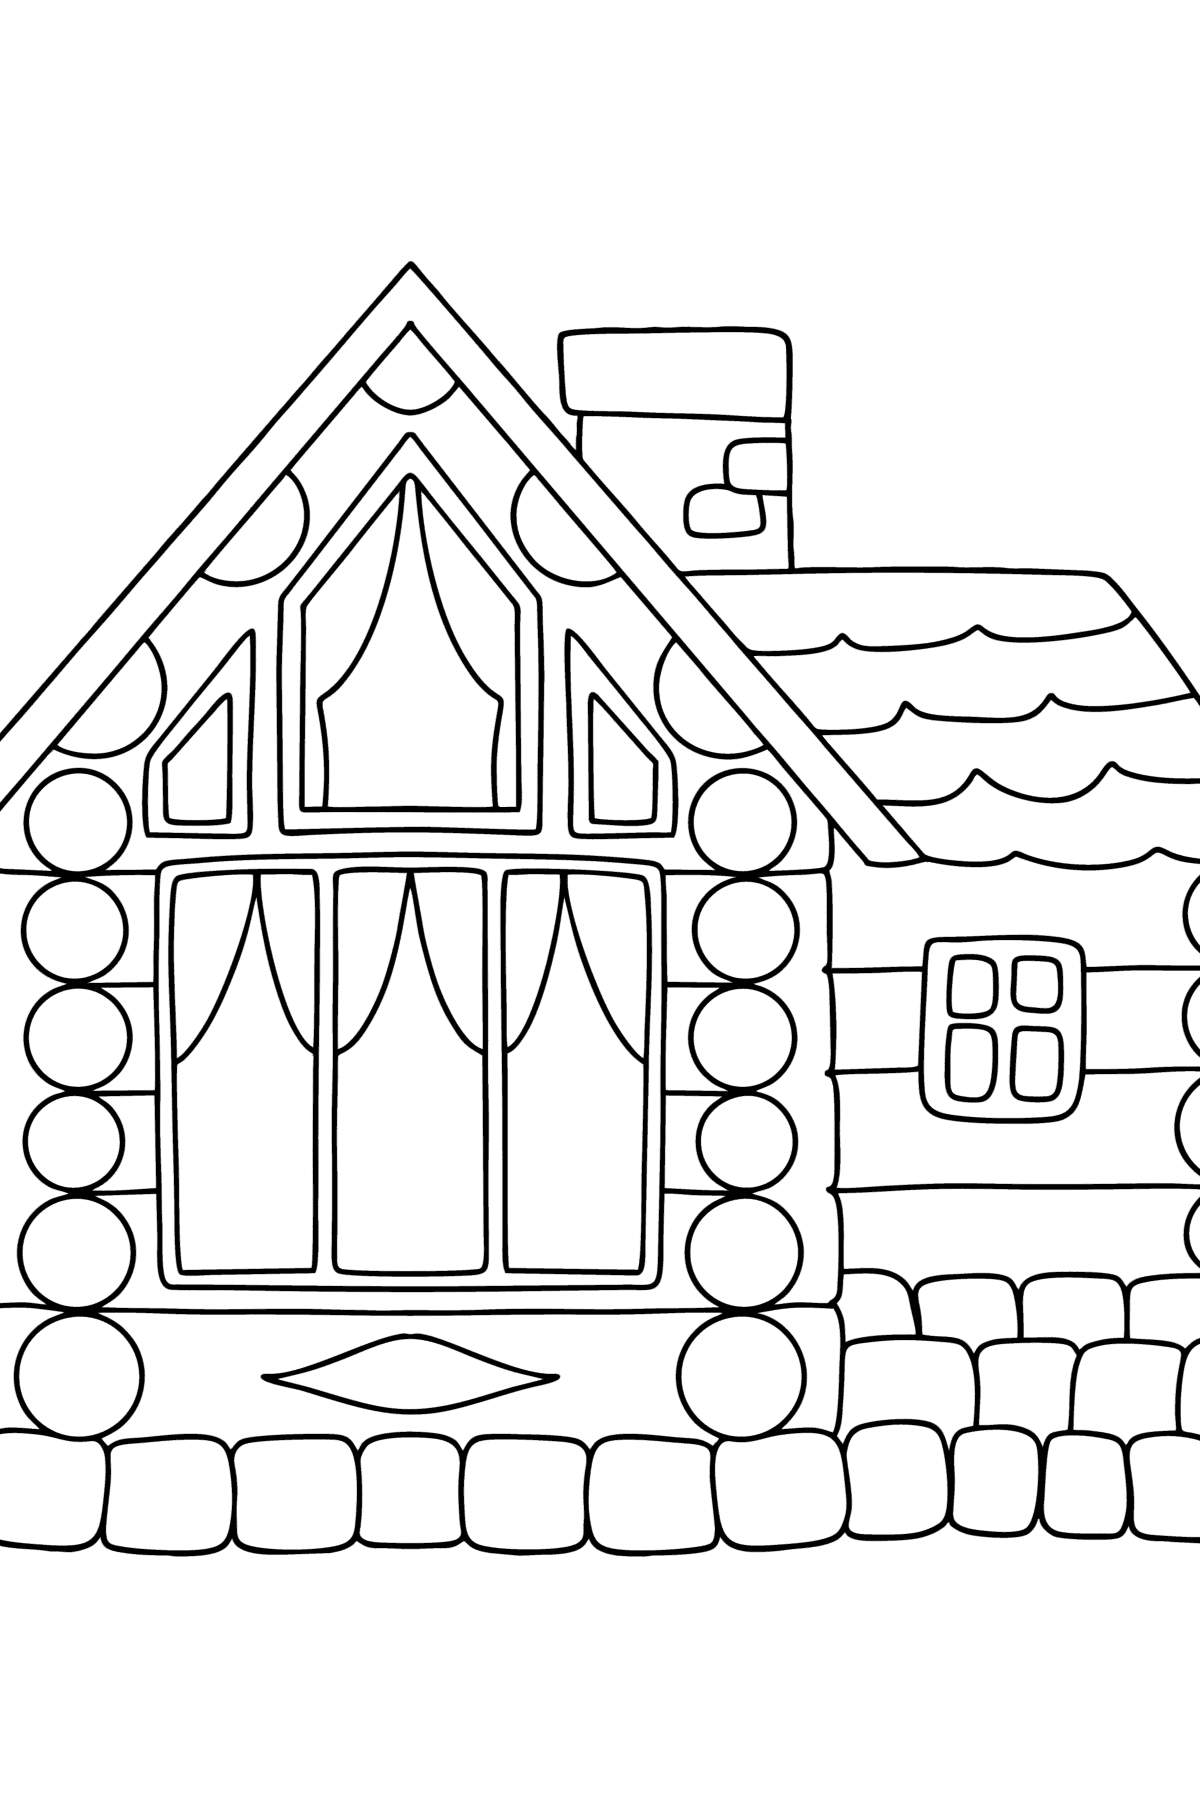 Desenho de Casa de madeira para colorir - Imagens para Colorir para Crianças